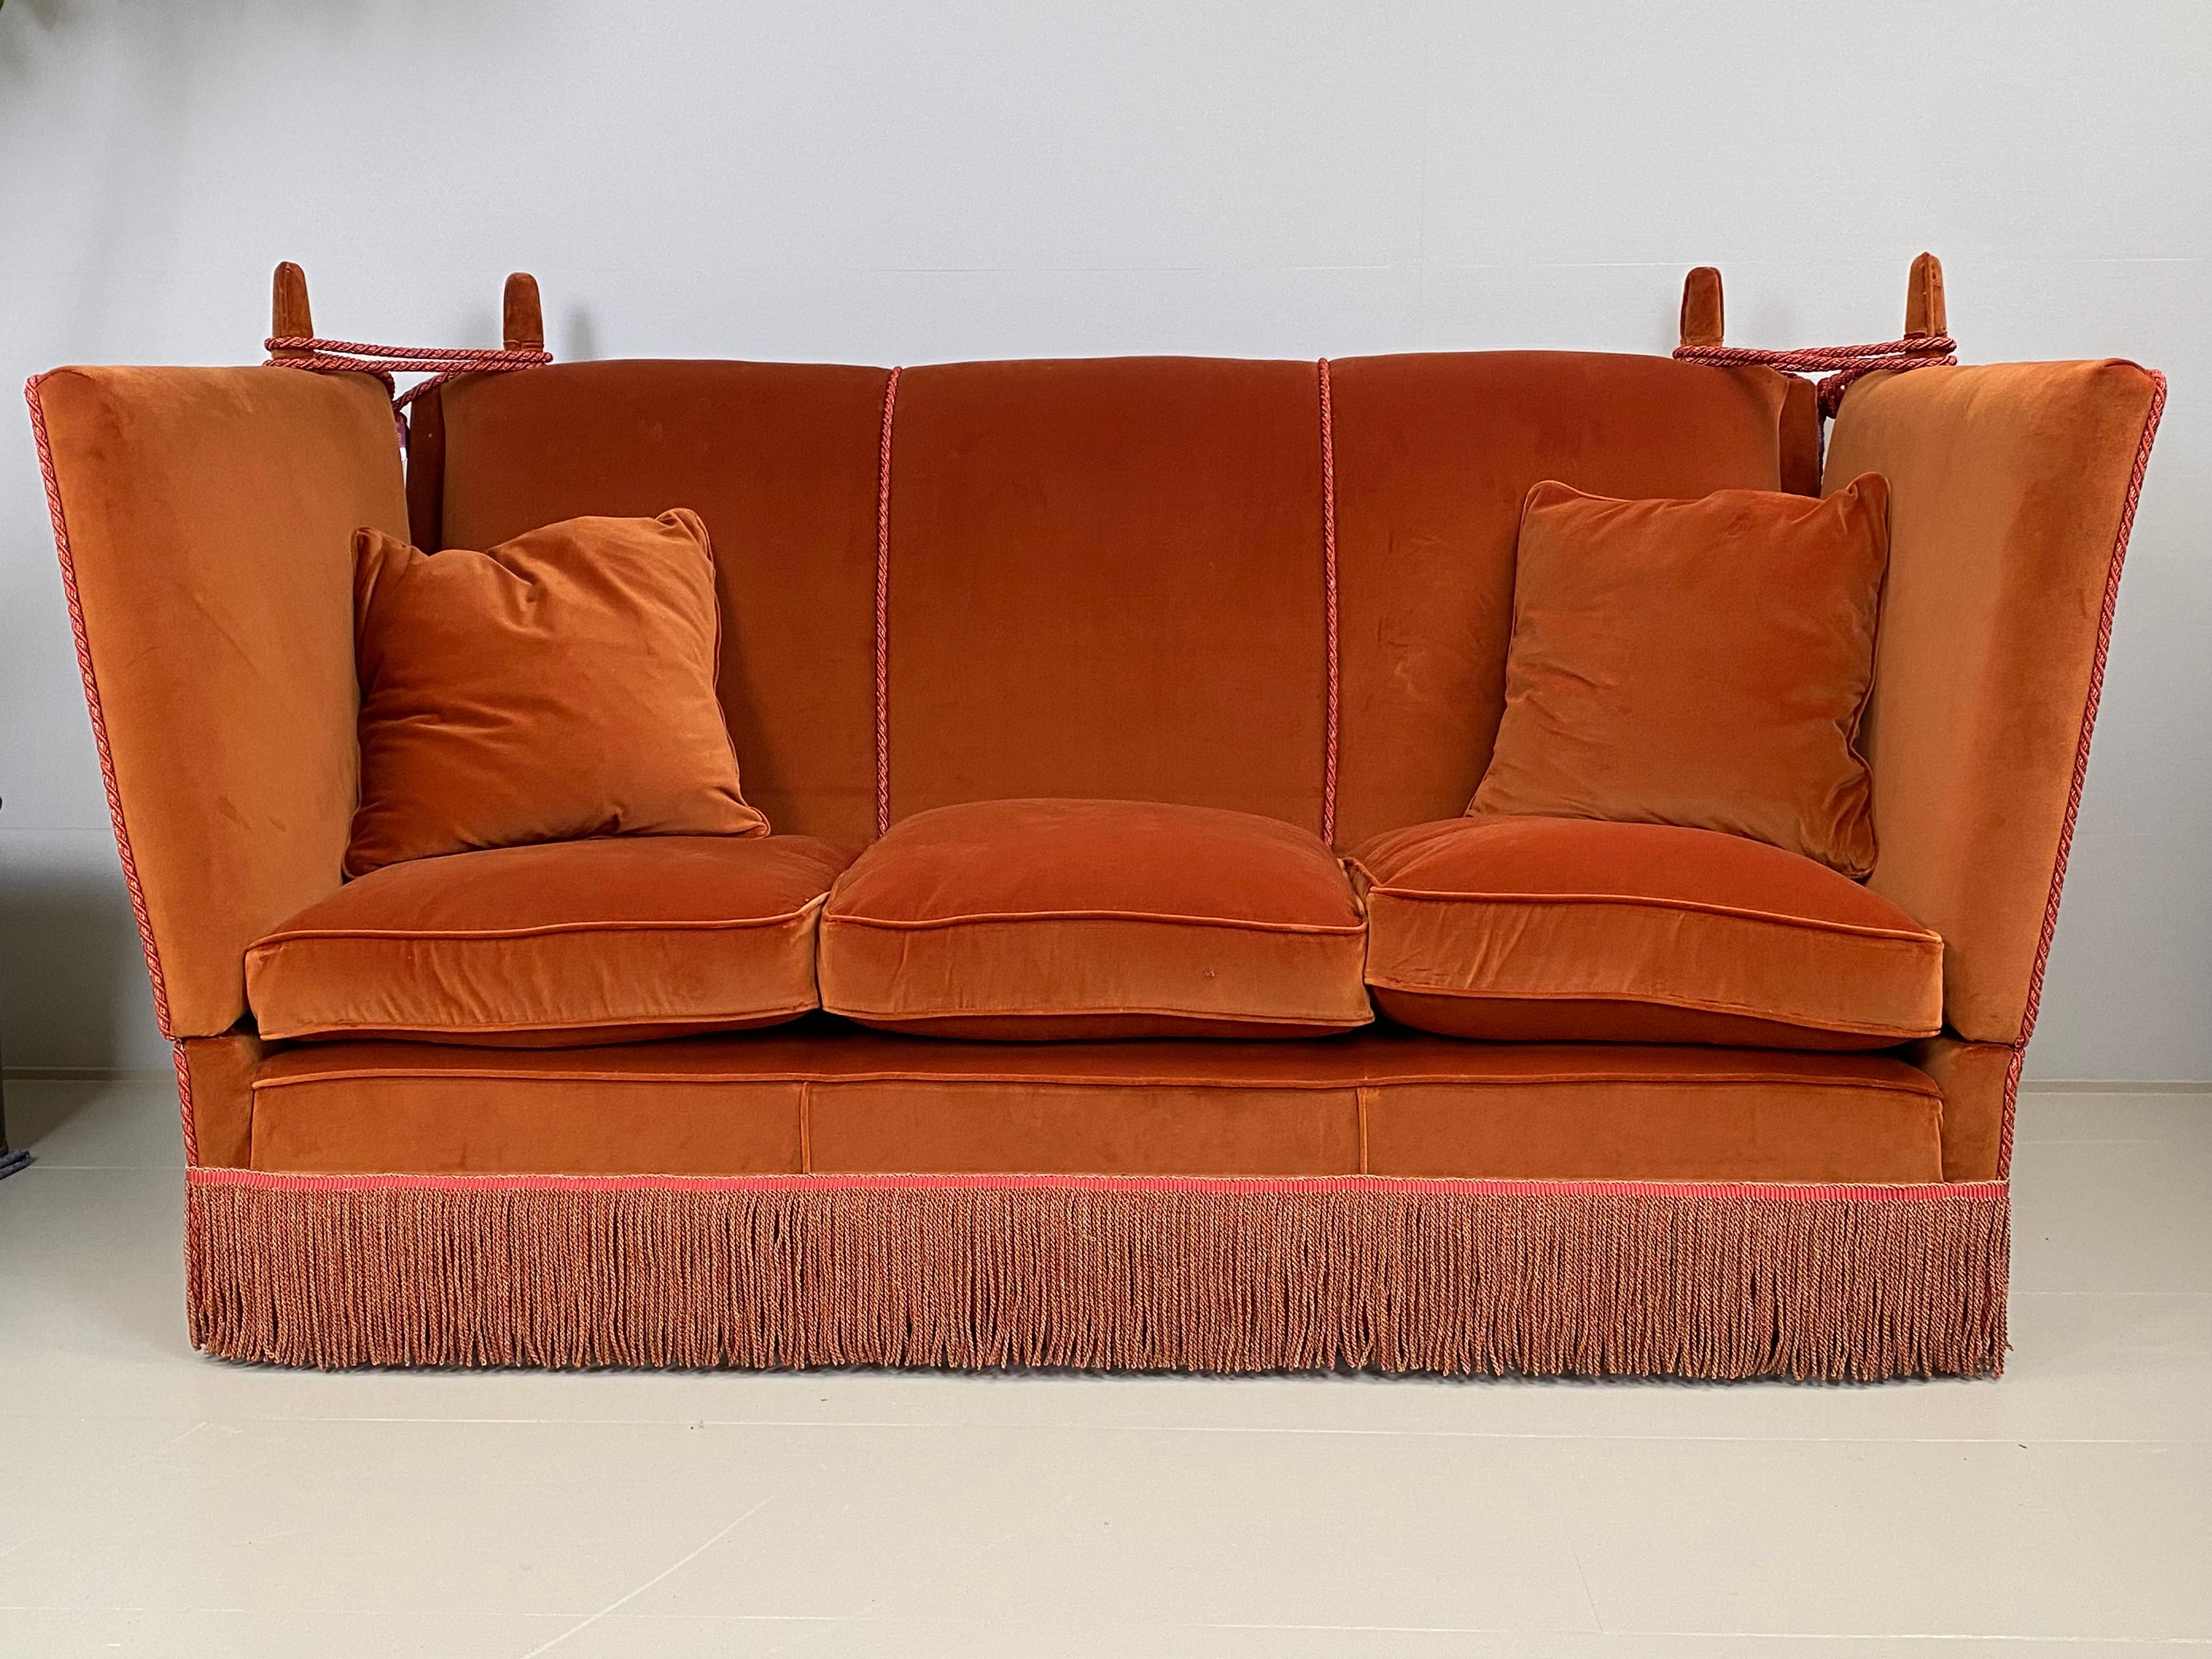 Magnifique canapé anglais, tapissé d'un velours orange,
état neuf,
excellente garniture.